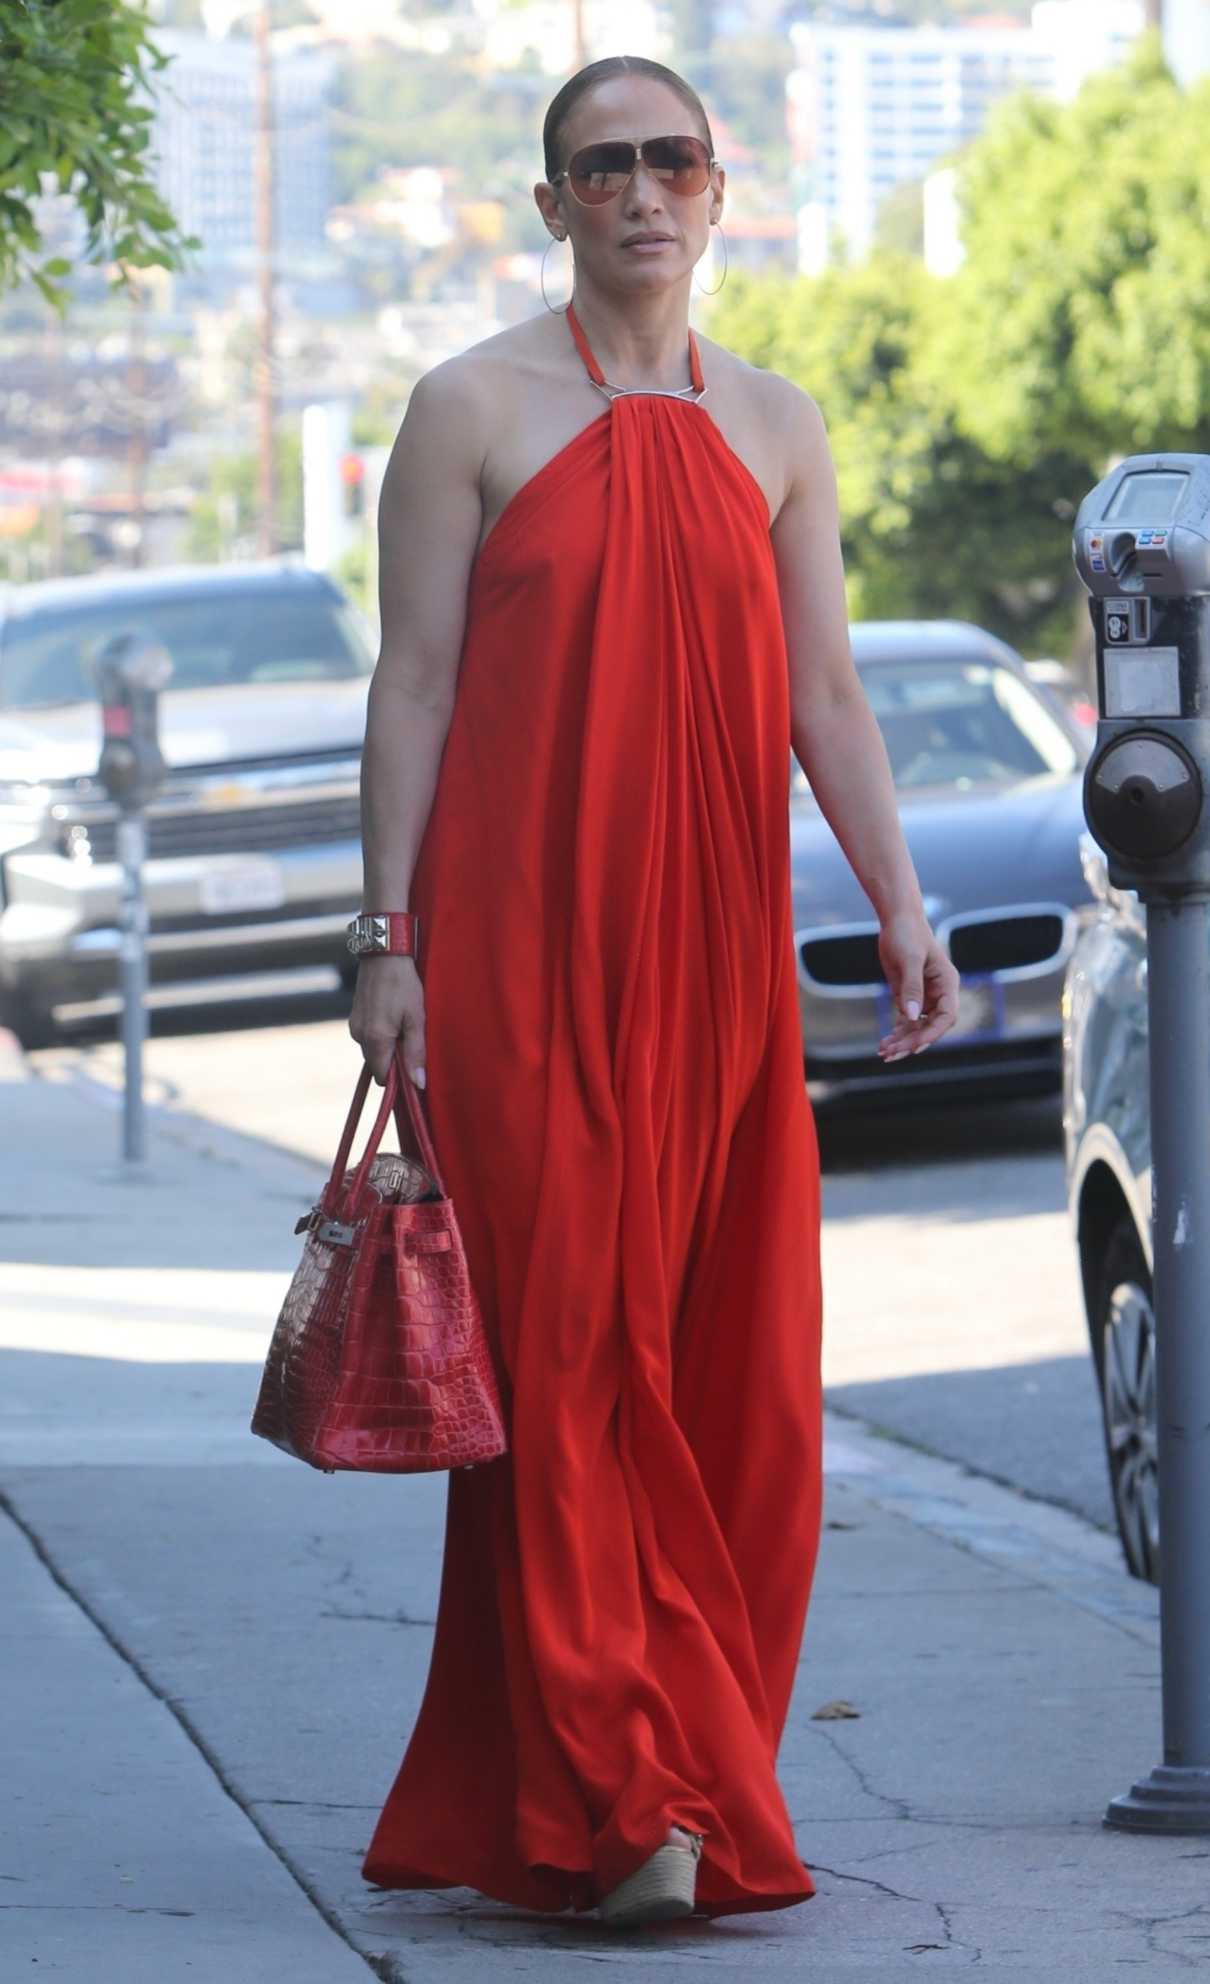 Jennifer Lopez in a Red Dress